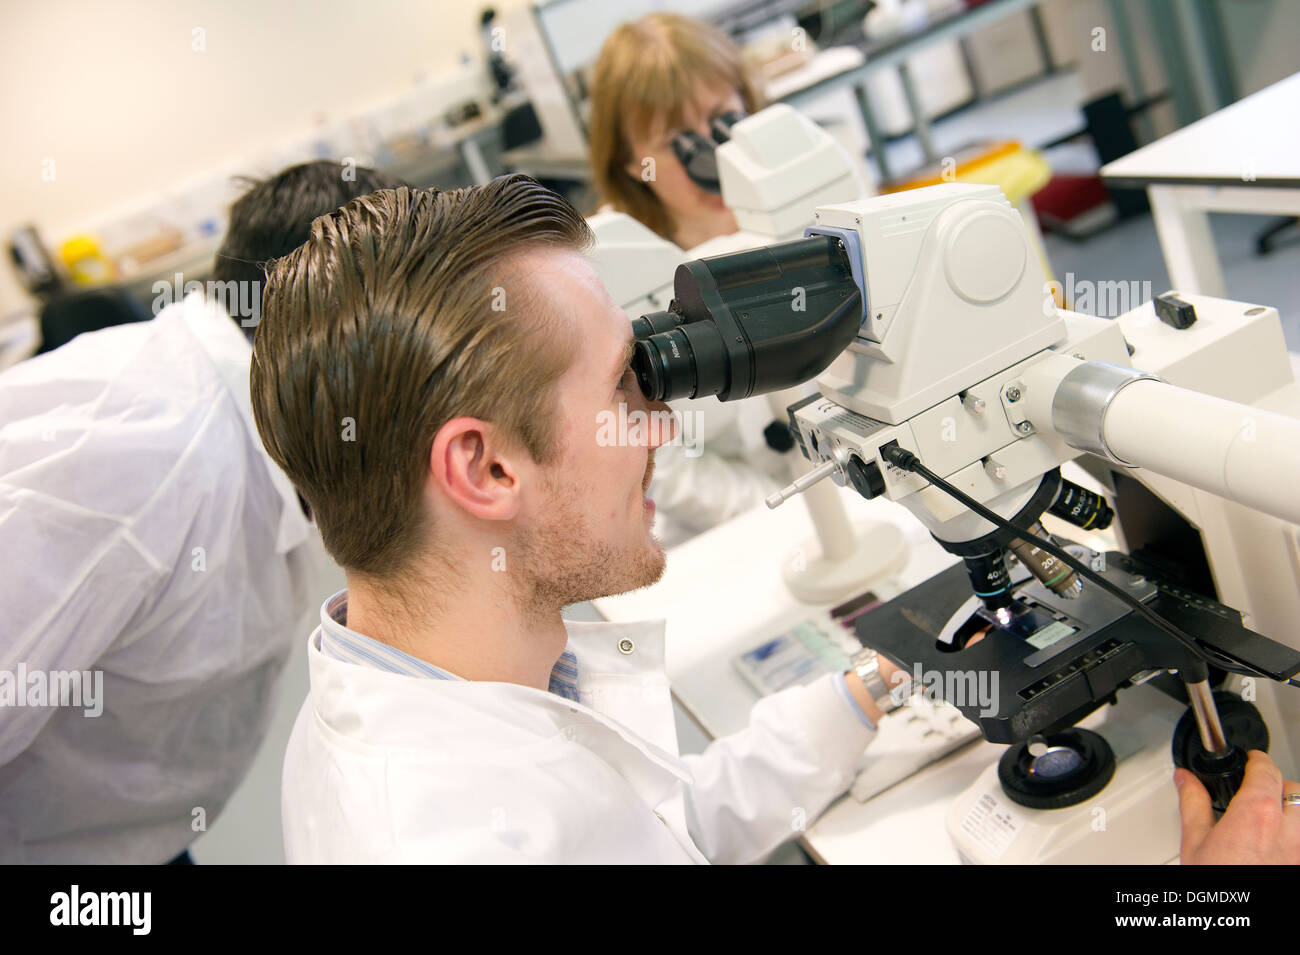 Ein männlicher Labortechniker untersucht Folien am Mikroskop am Tameside General Hospital. Stockfoto